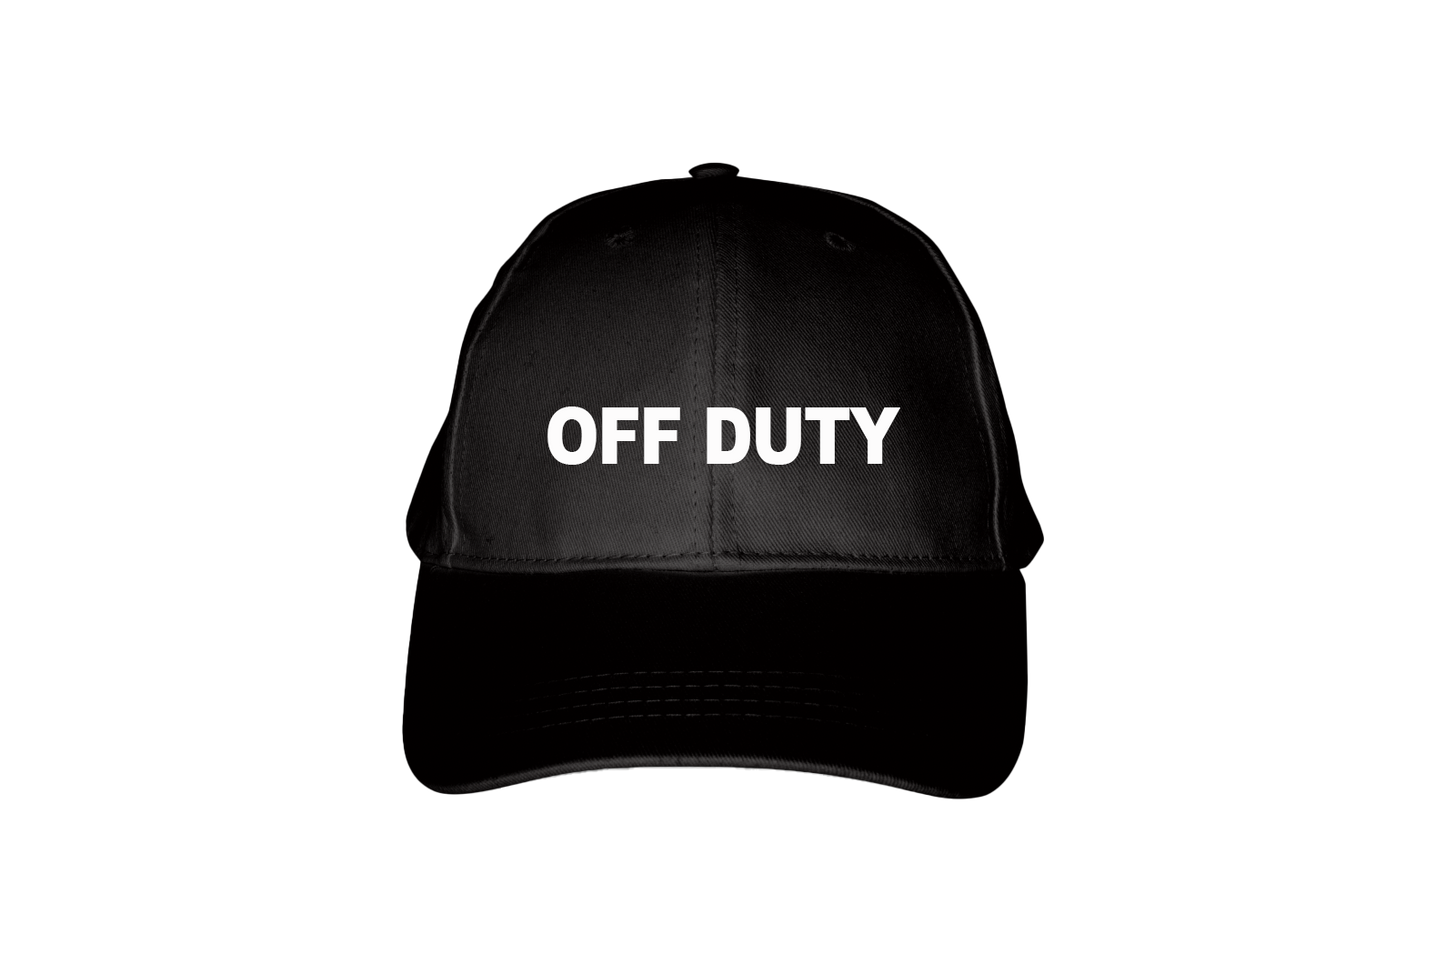 Urban Spy Shop Off-Duty Ball Cap